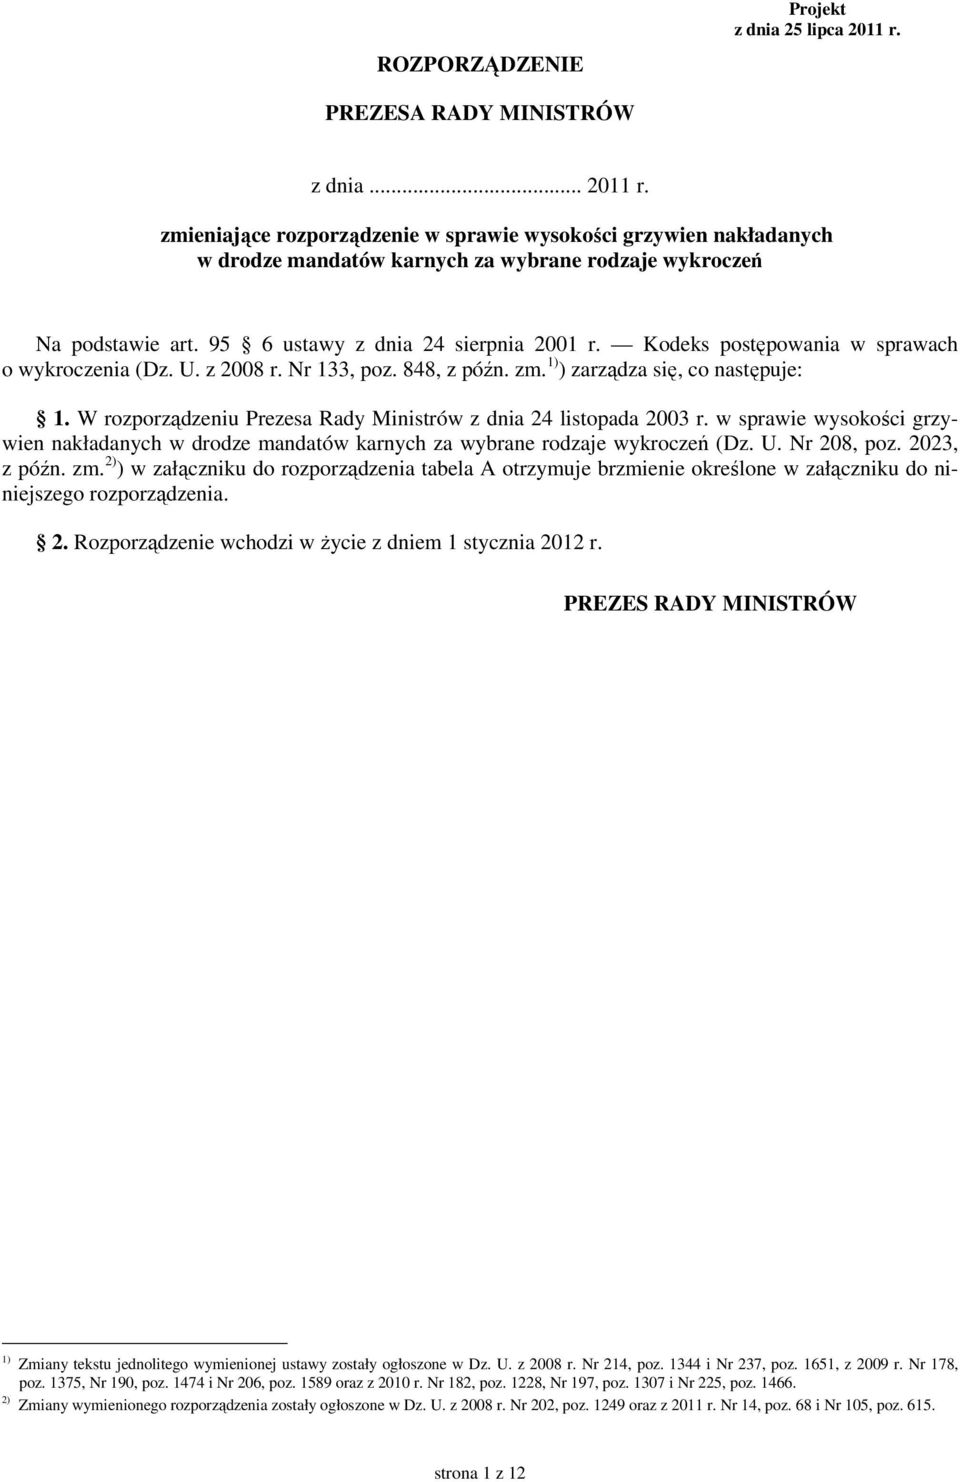 W rozporządzeniu Prezesa Rady Ministrów z dnia 24 listopada 2003 r. w sprawie wysokości grzywien nakładanych w drodze mandatów karnych za wybrane rodzaje wykroczeń (Dz. U. Nr 208, poz. 2023, z późn.